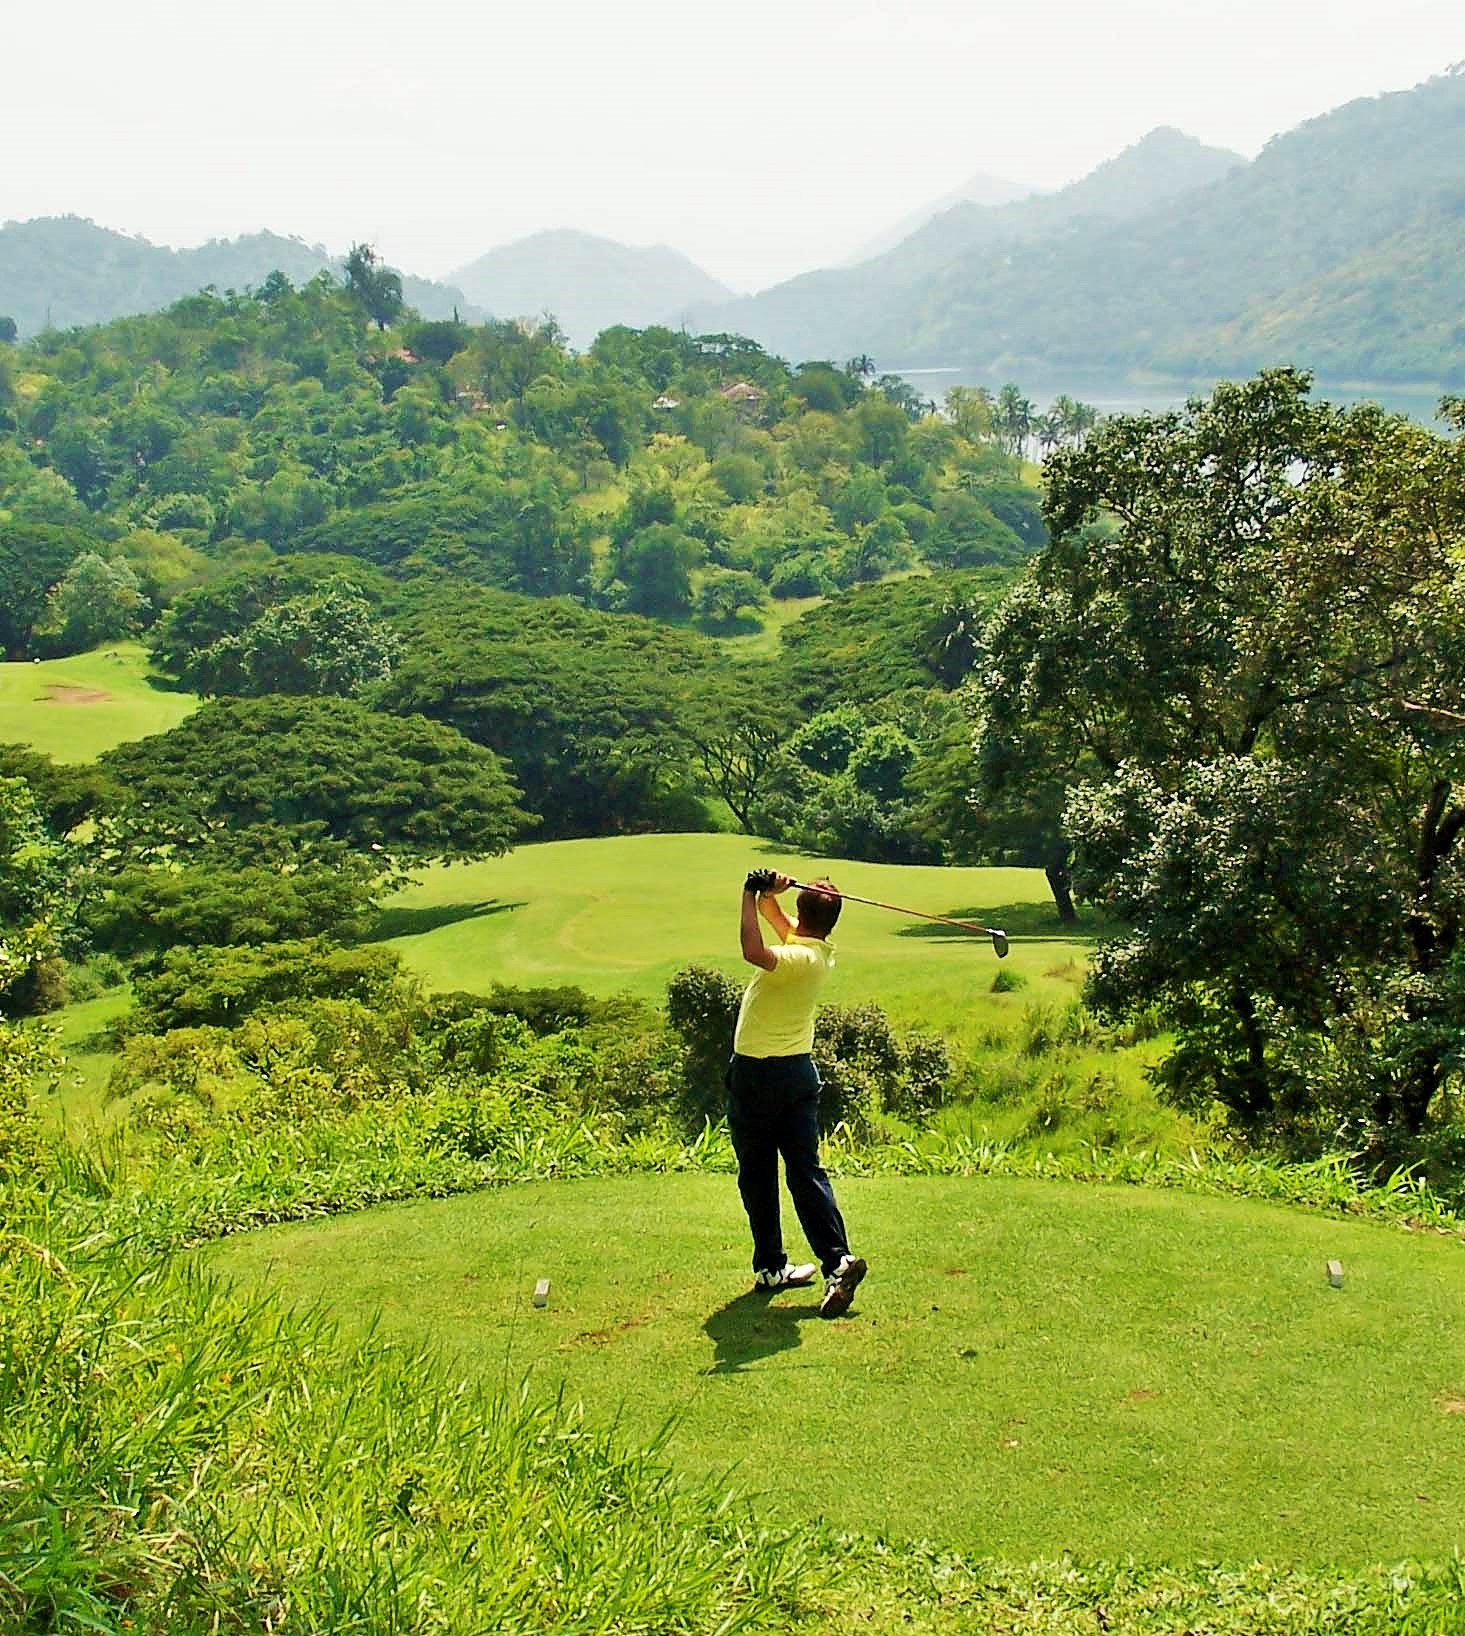 Sri lanka field of Golf